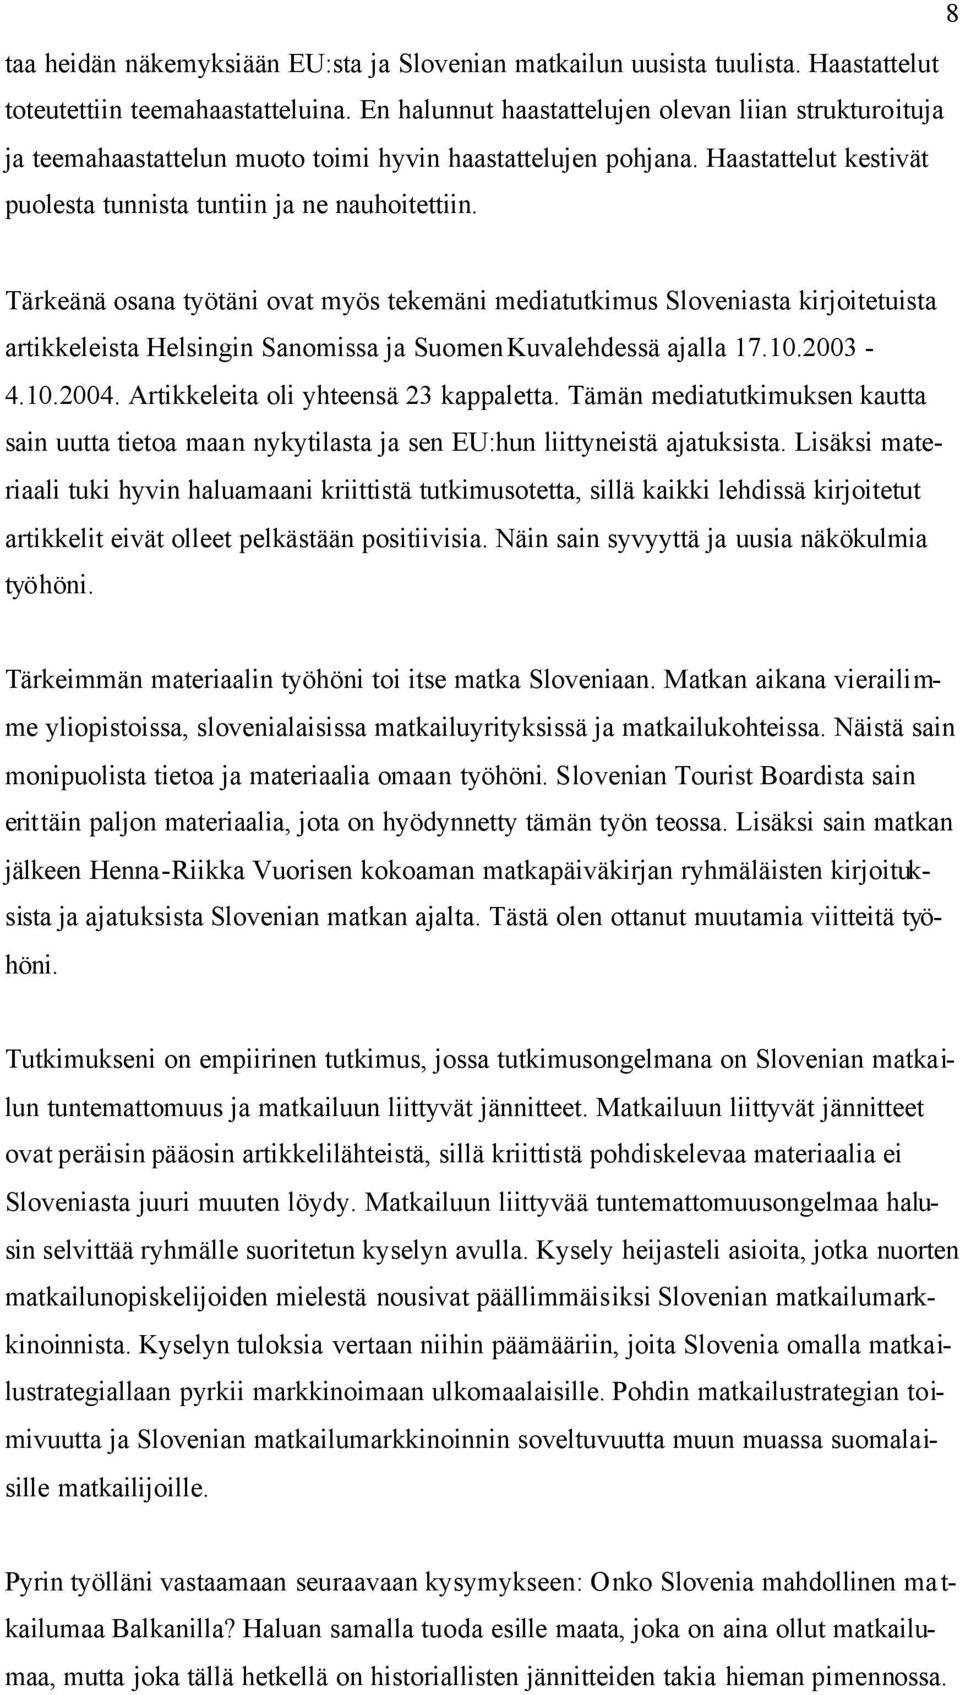 Tärkeänä osana työtäni ovat myös tekemäni mediatutkimus Sloveniasta kirjoitetuista artikkeleista Helsingin Sanomissa ja Suomen Kuvalehdessä ajalla 17.10.2003-4.10.2004.